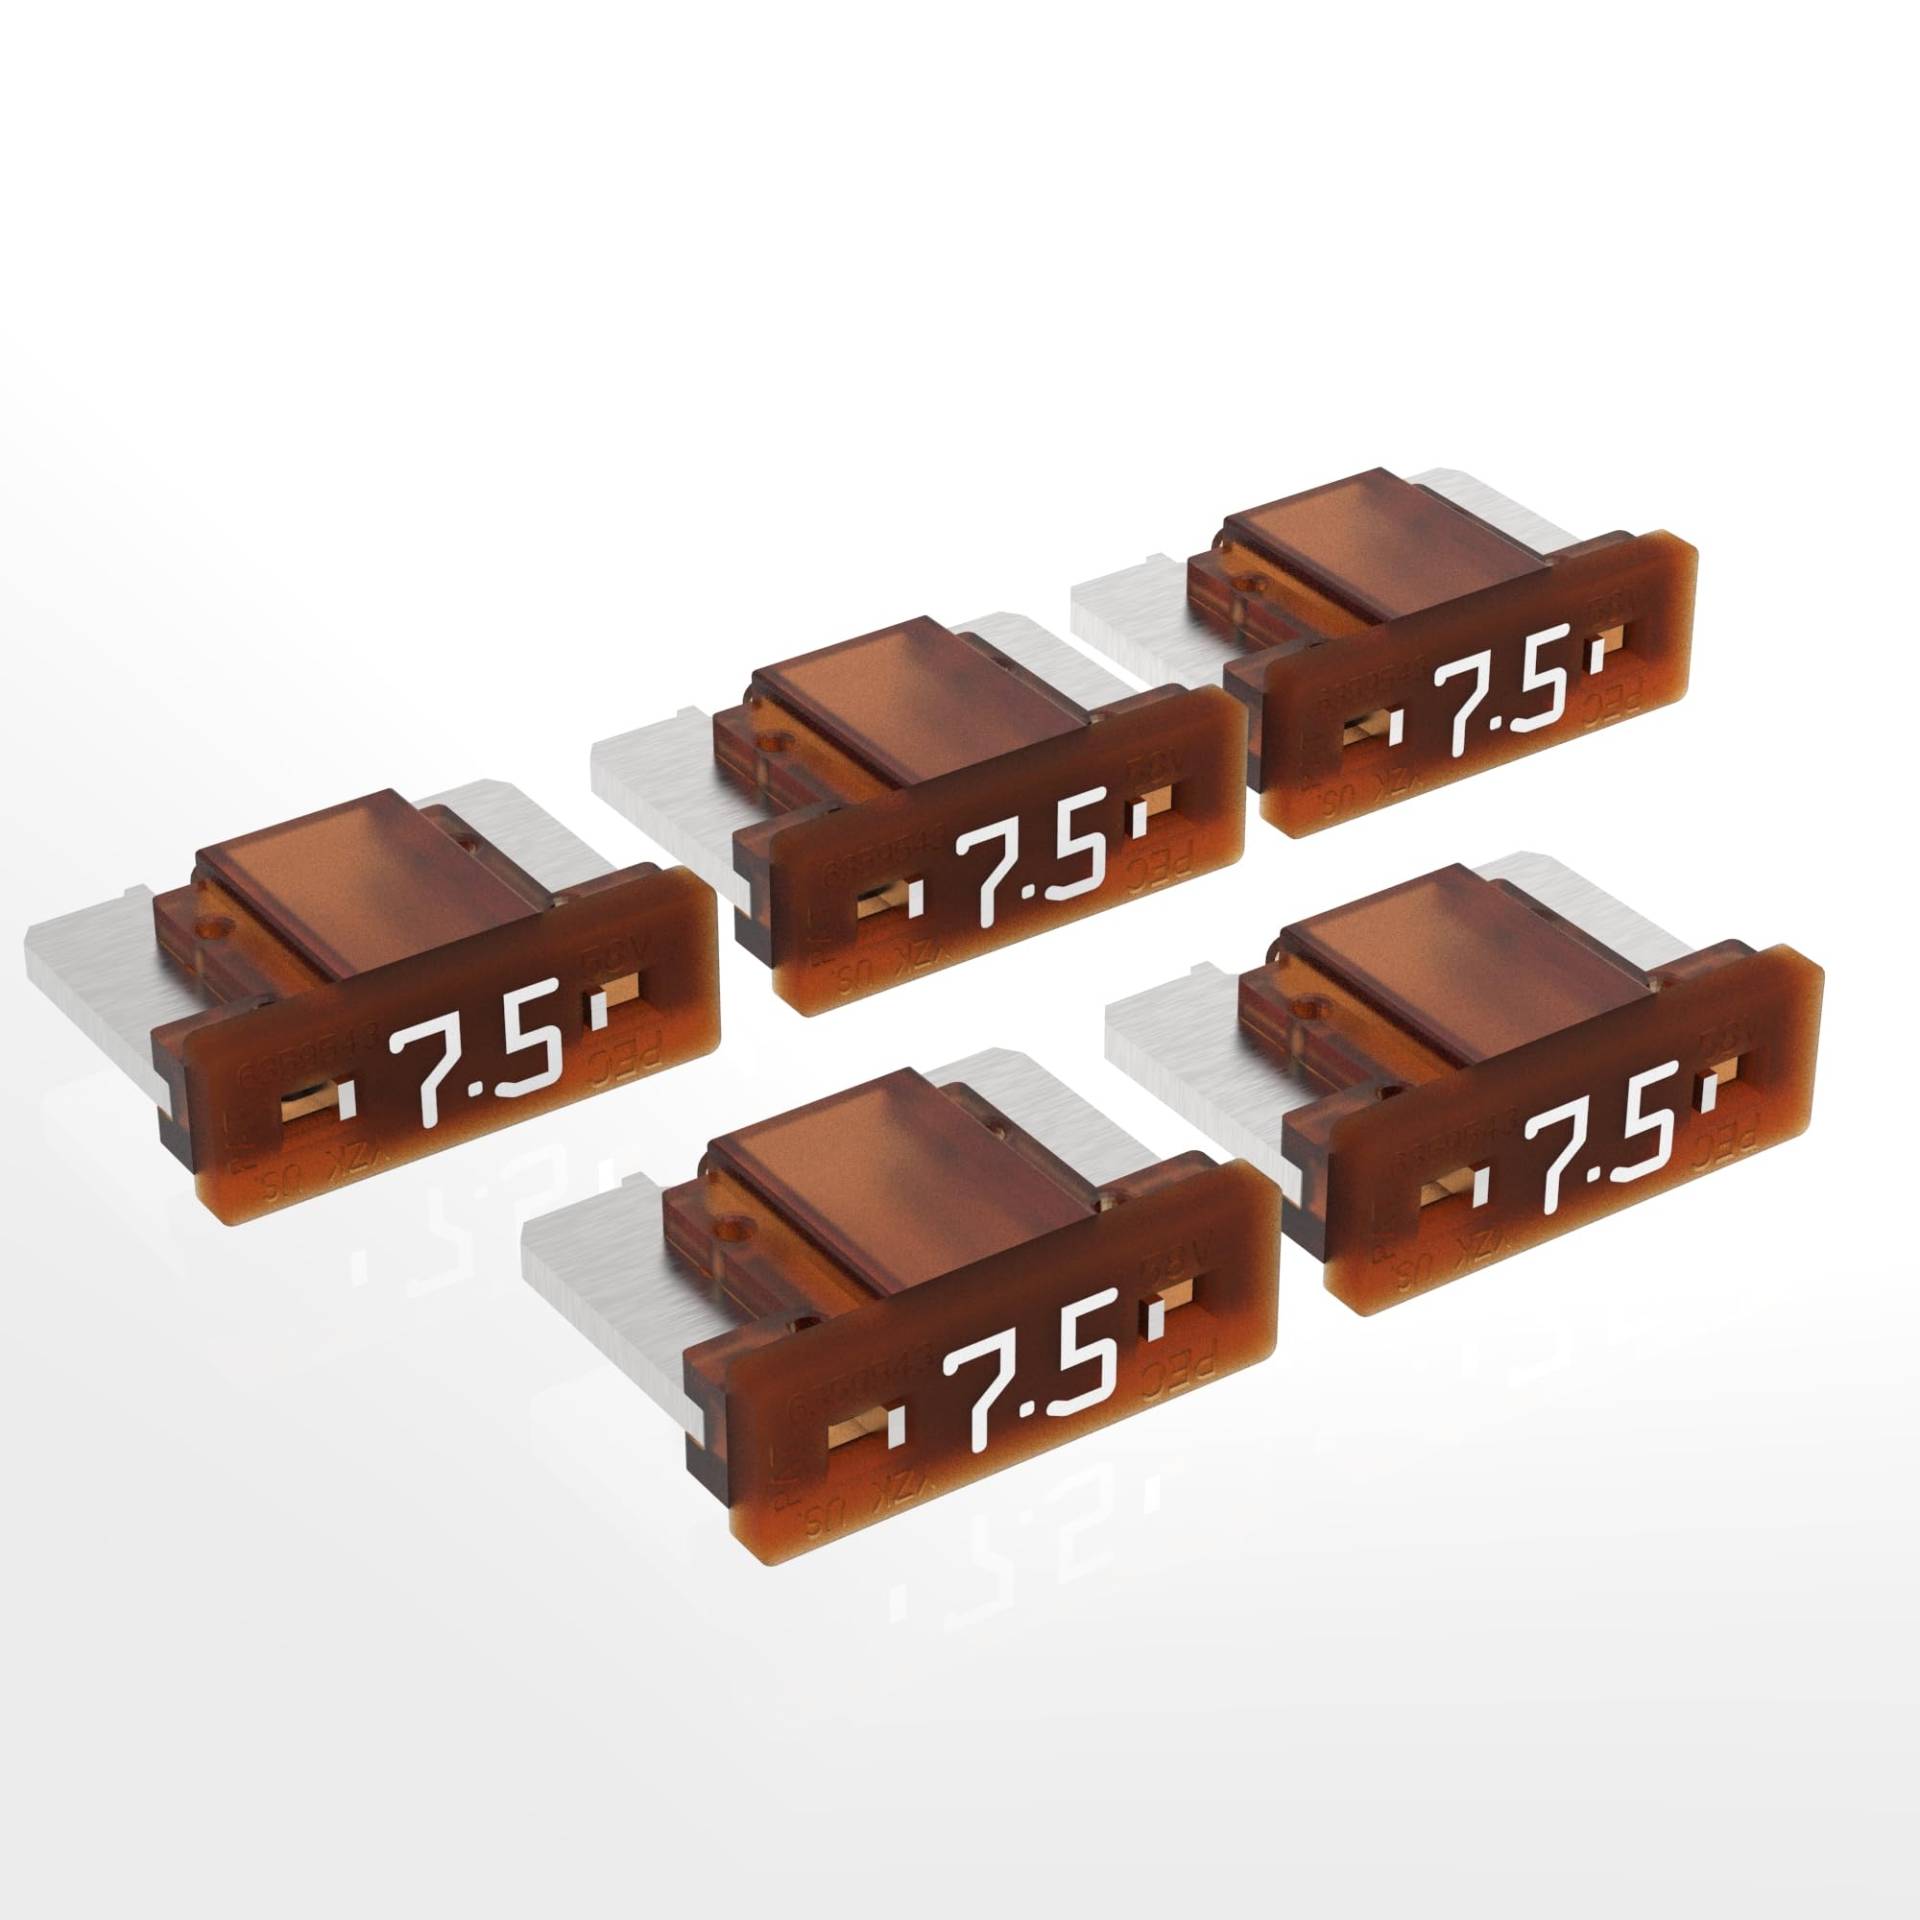 AUPROTEC Mini LP Kfz Sicherungen Flachstecksicherungen 2A - 30A Auswahl: 7,5A Ampere braun, 5 Stück von AUPROTEC